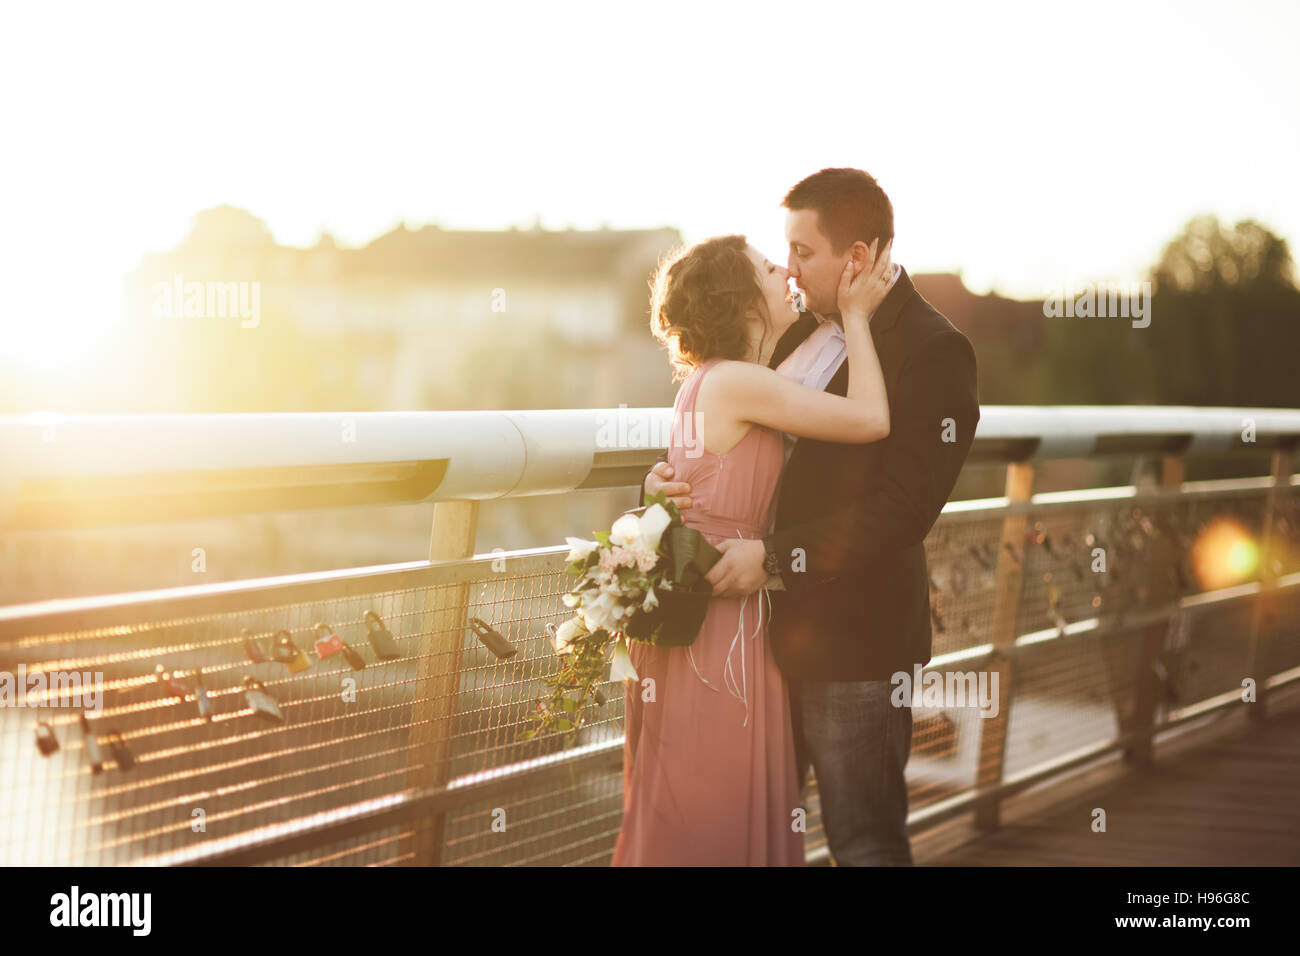 Stilvoll lieben Brautpaar, Bräutigam, Braut mit rosa Kleid küssen und umarmen auf einer Brücke bei Sonnenuntergang Stockfoto